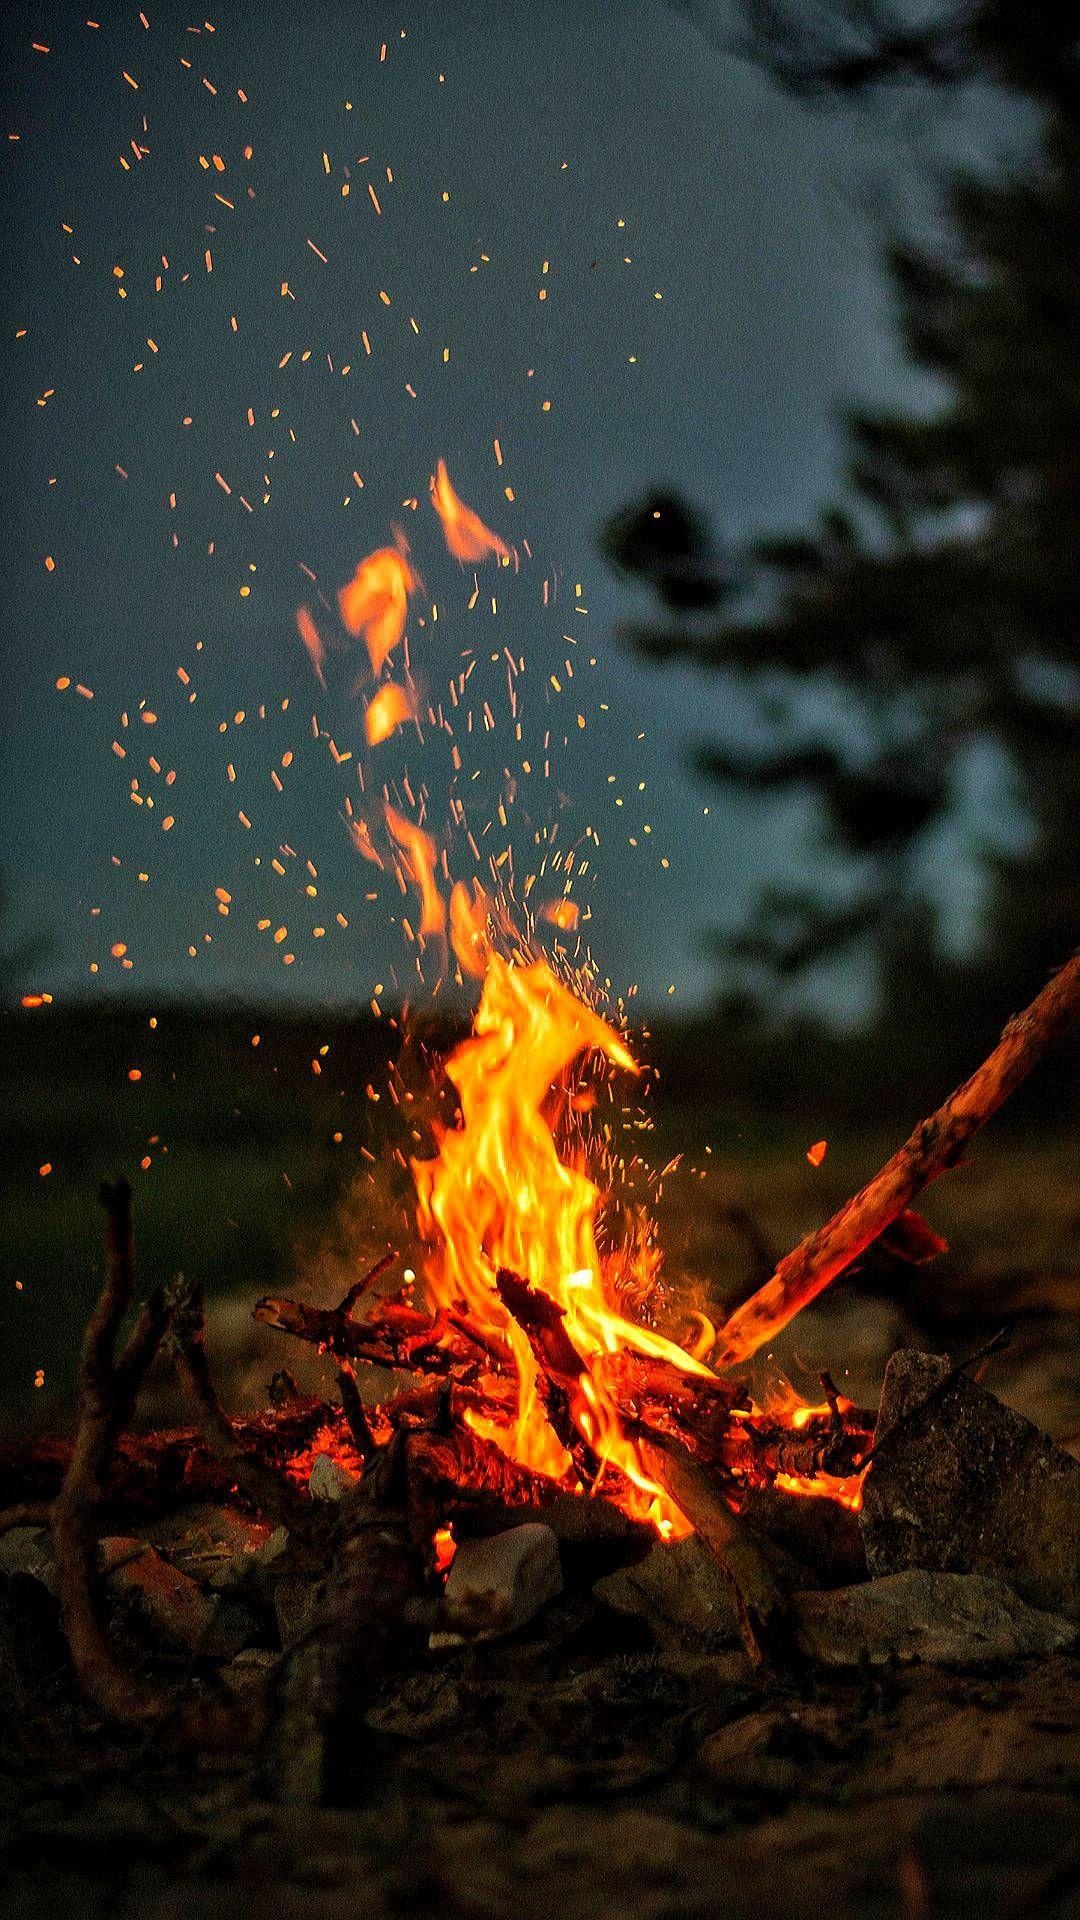 Fireplace: Bonfire, A large fire built outdoors, Heating. 1080x1920 Full HD Wallpaper.